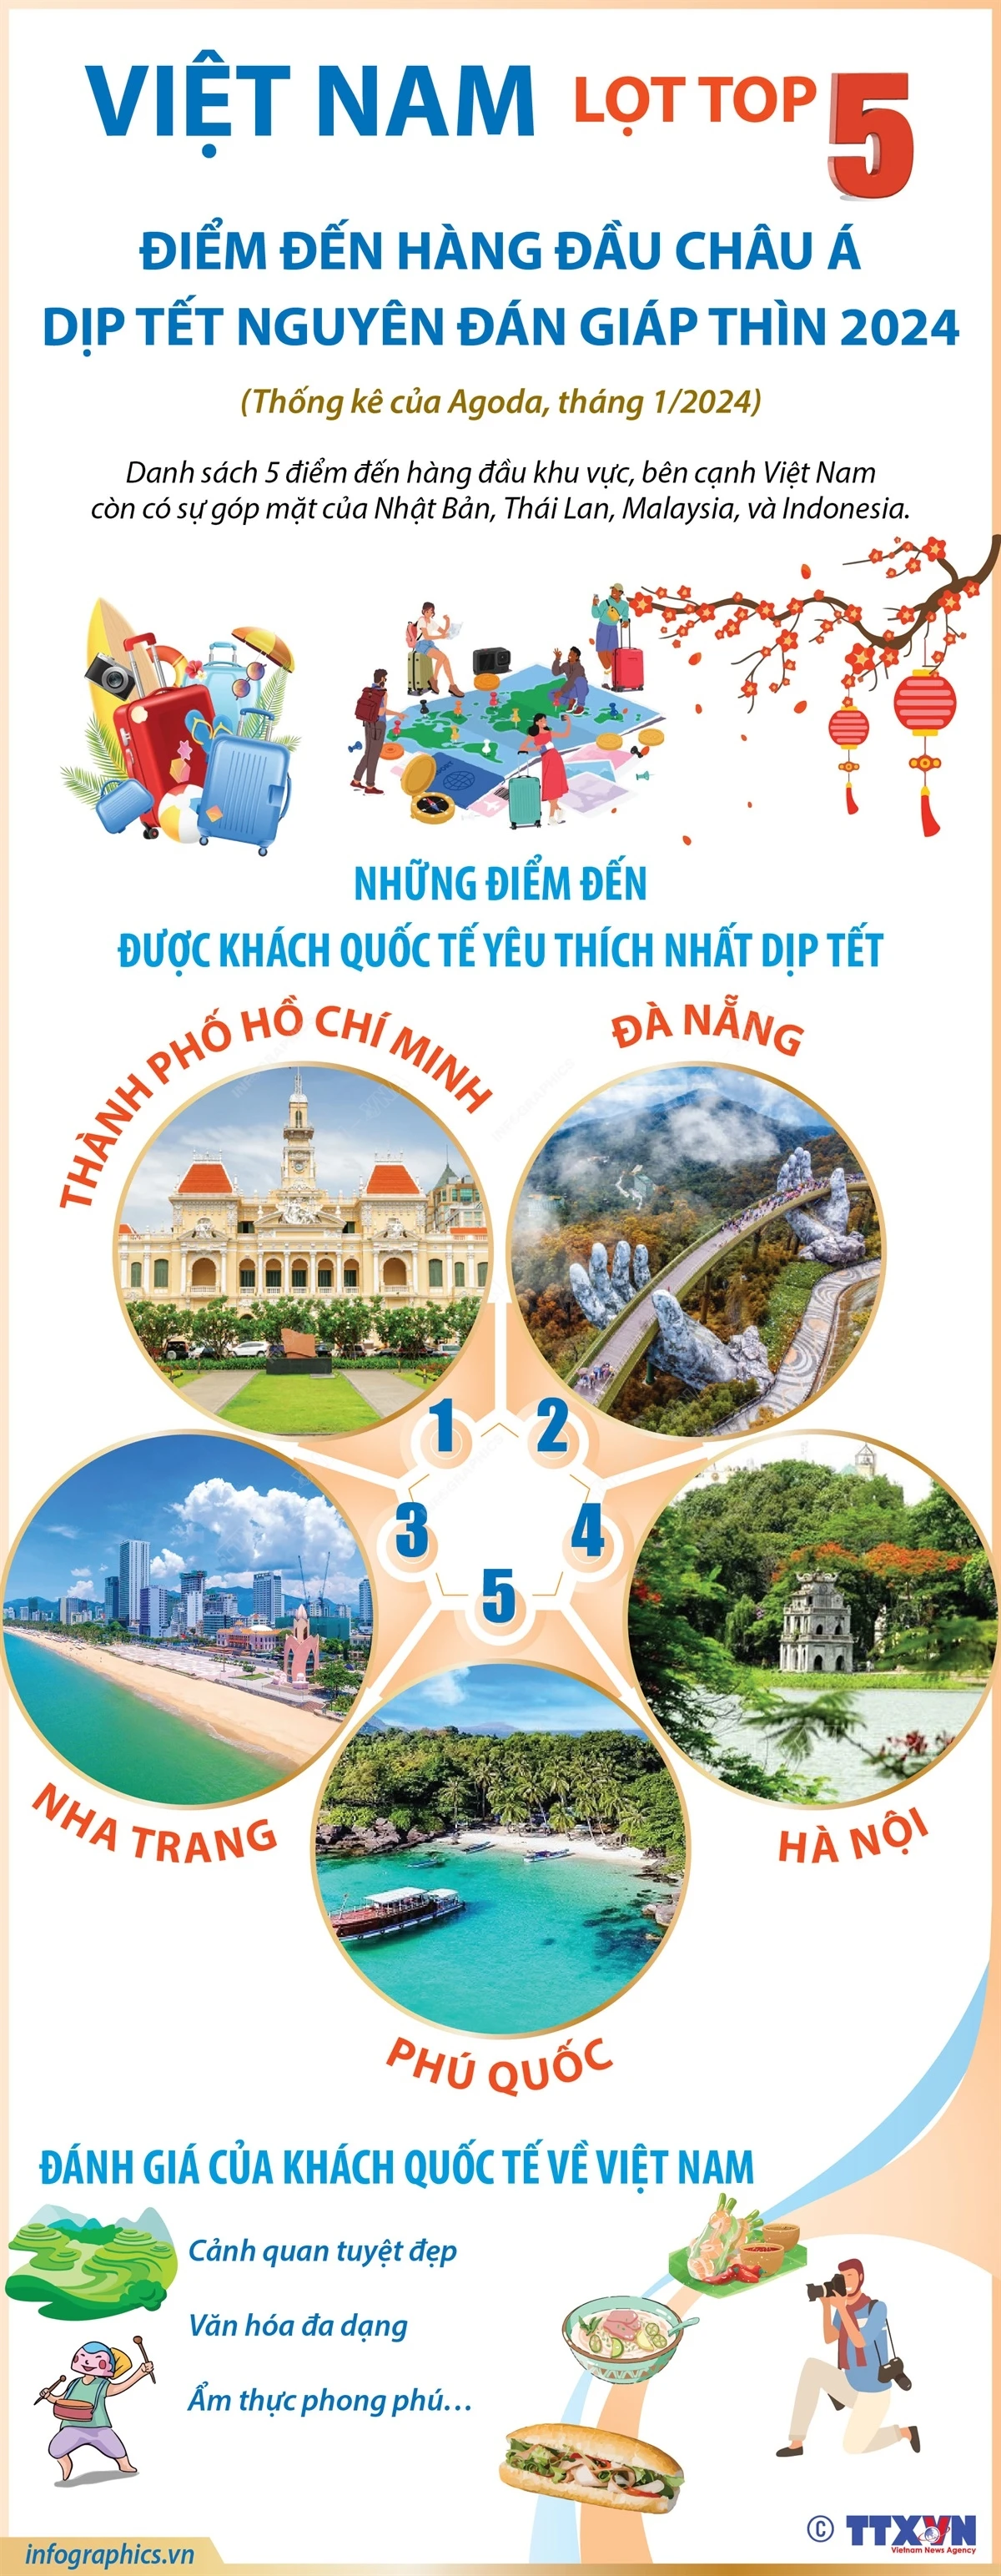 Việt Nam vào top 5 điểm đến hàng đầu châu Á dịp Tết Nguyên đán Giáp Thìn 2024- Ảnh 1.